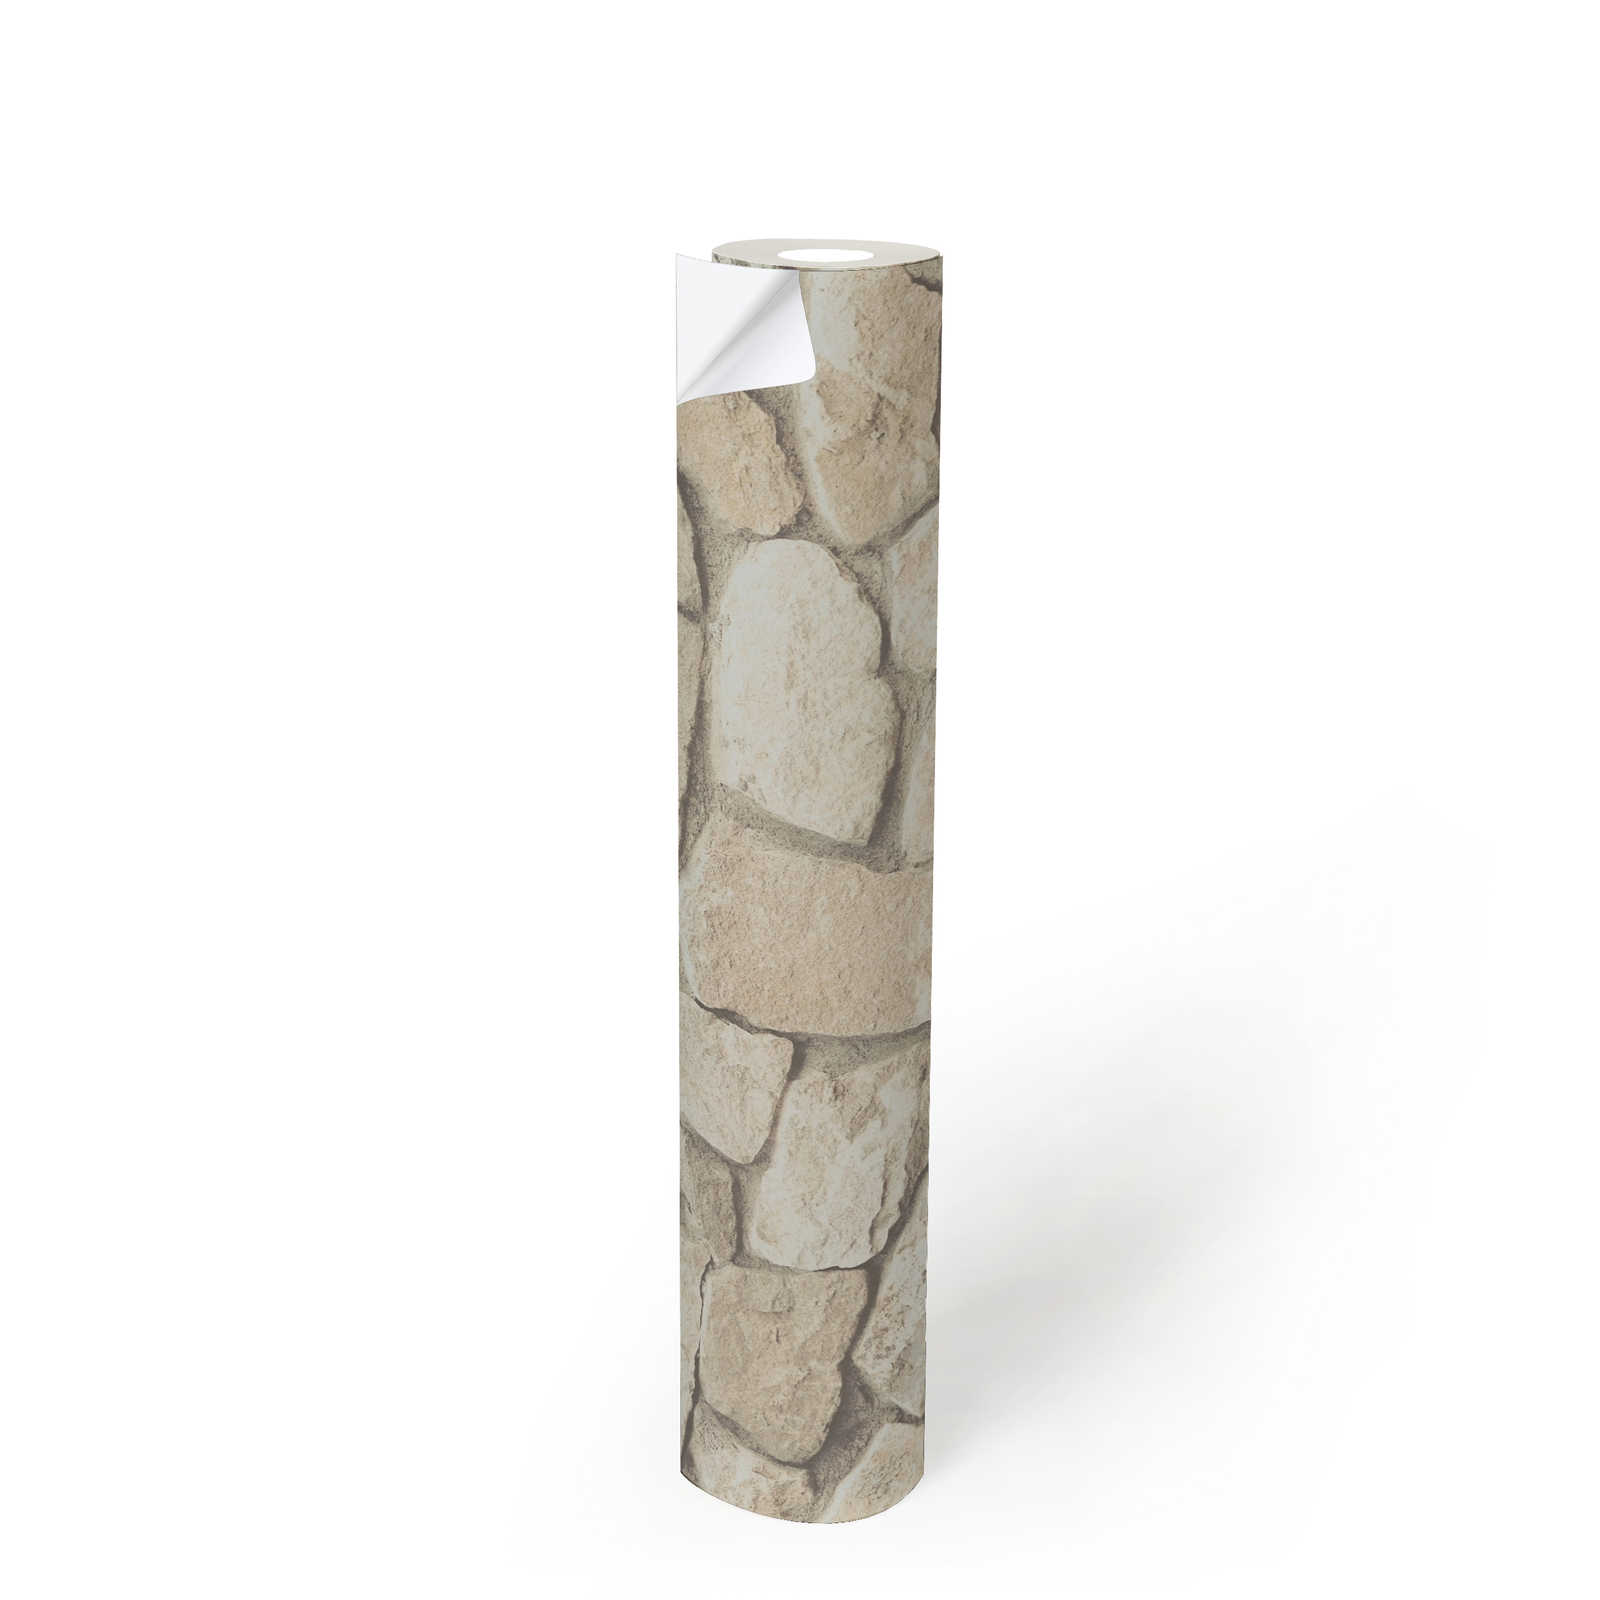             Zelfklevend behangpapier | natuursteenlook met 3D-effect - beige, crème
        